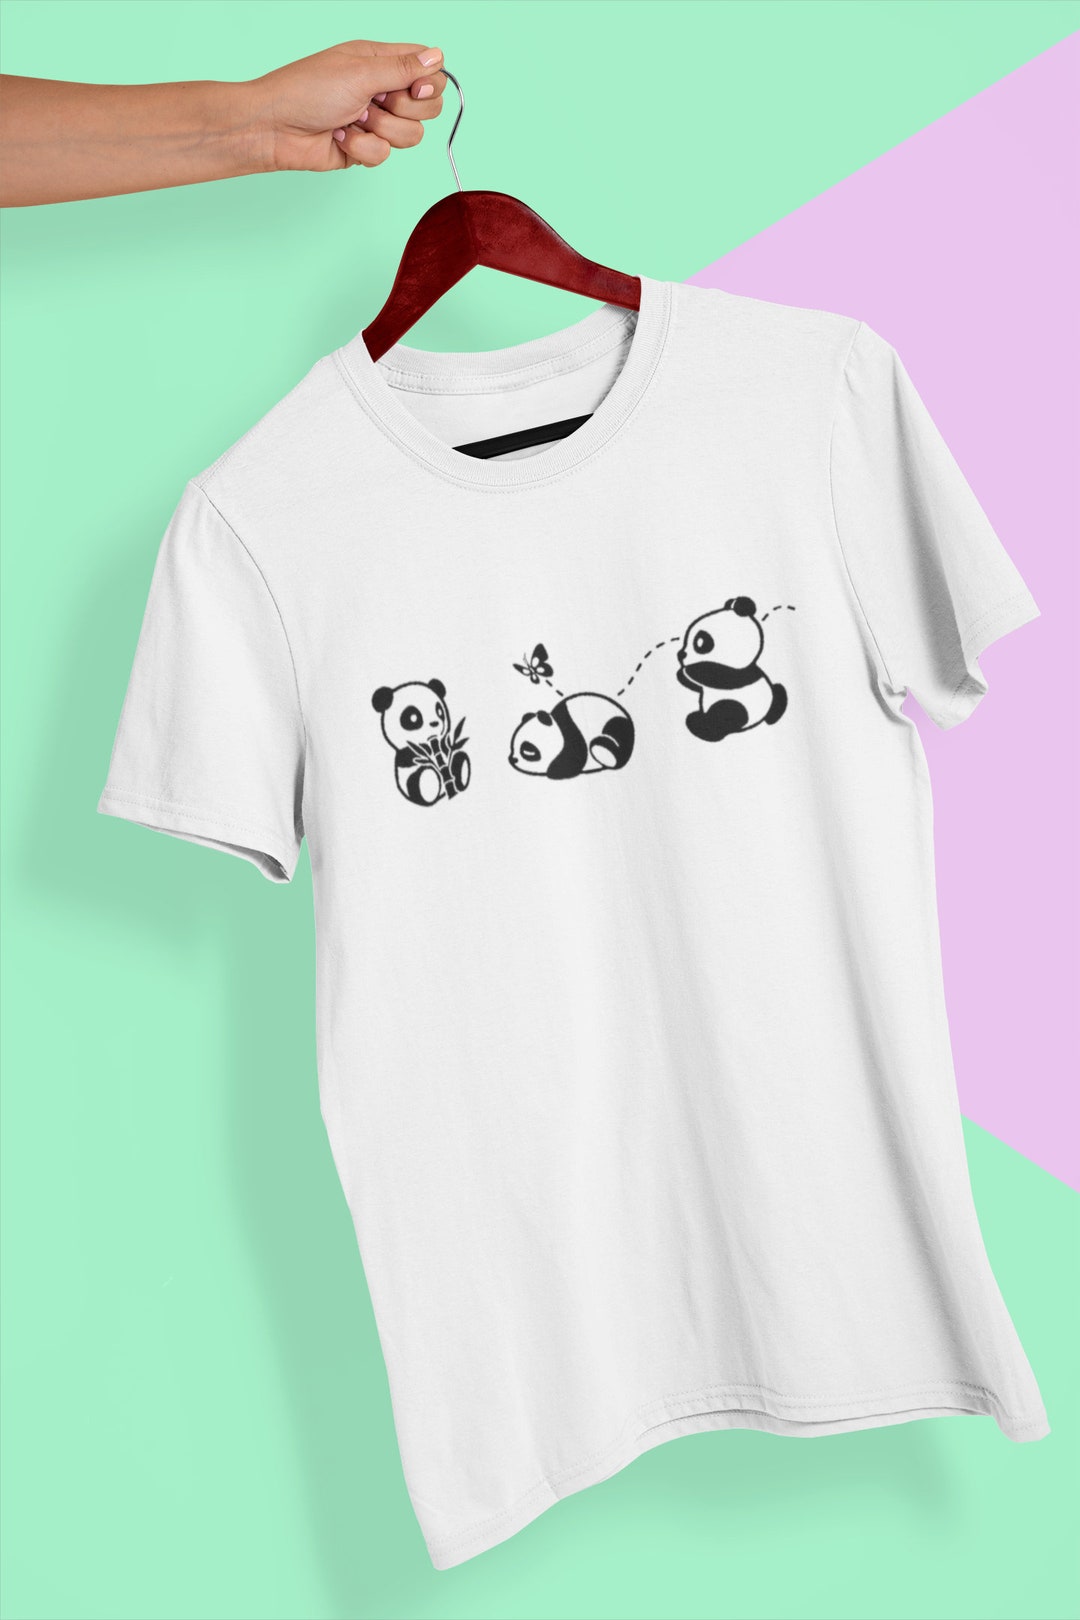 Panda, Cute Shirt, Panda Shirt, Panda Bear, Cute, Cute Gifts for Girlfriends,  Pun Shirt, Party Shirt, T-shirt, Shirt, Tee 